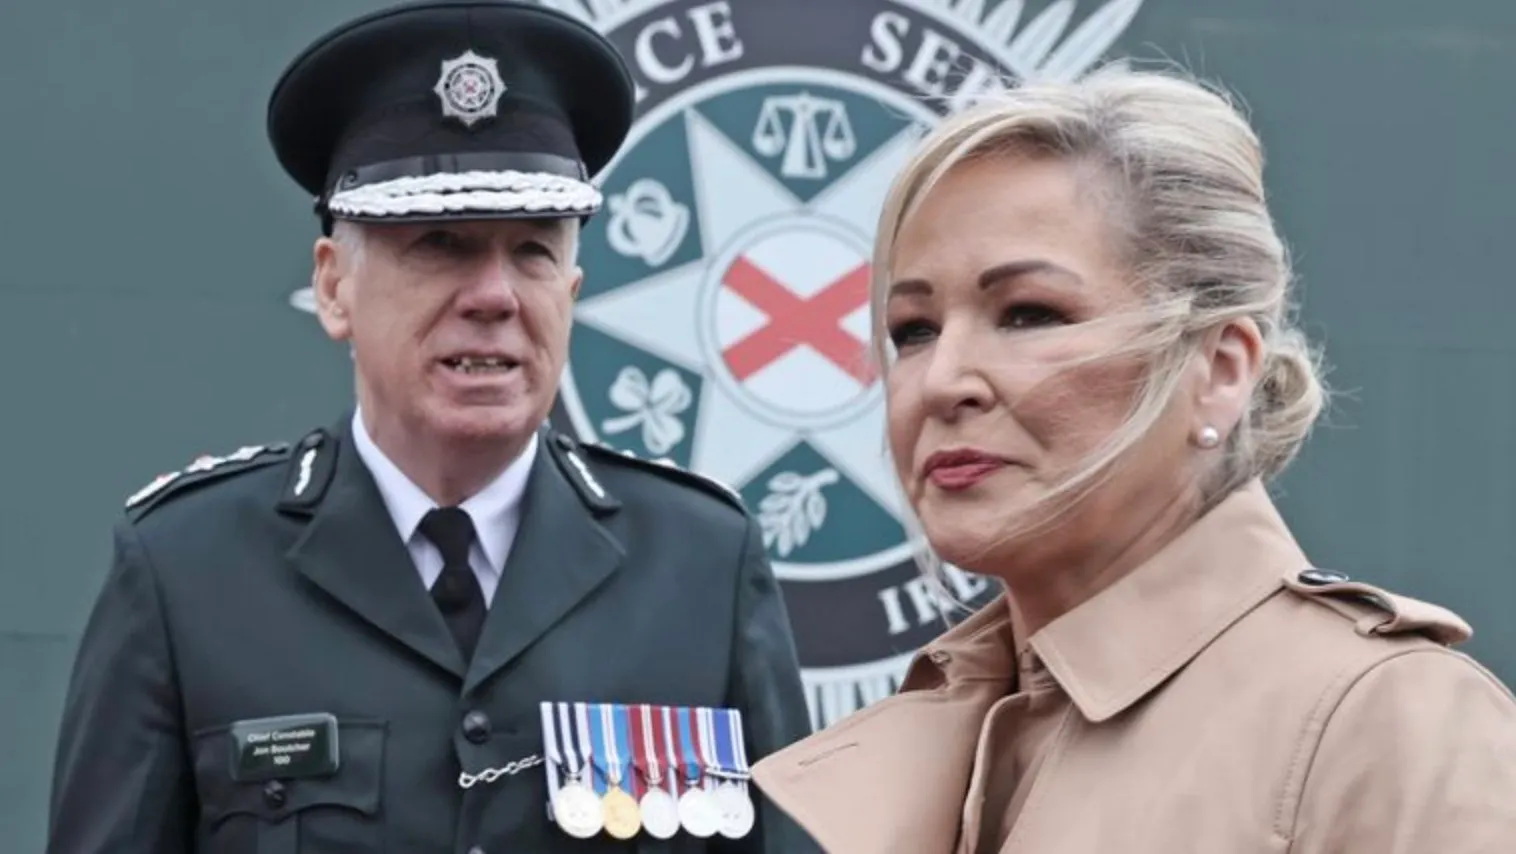 Γιατί το Sinn Fein και η Michelle O’Neill επέστρεψαν στην διακυβέρνηση στην Βόρειο Ιρλανδία